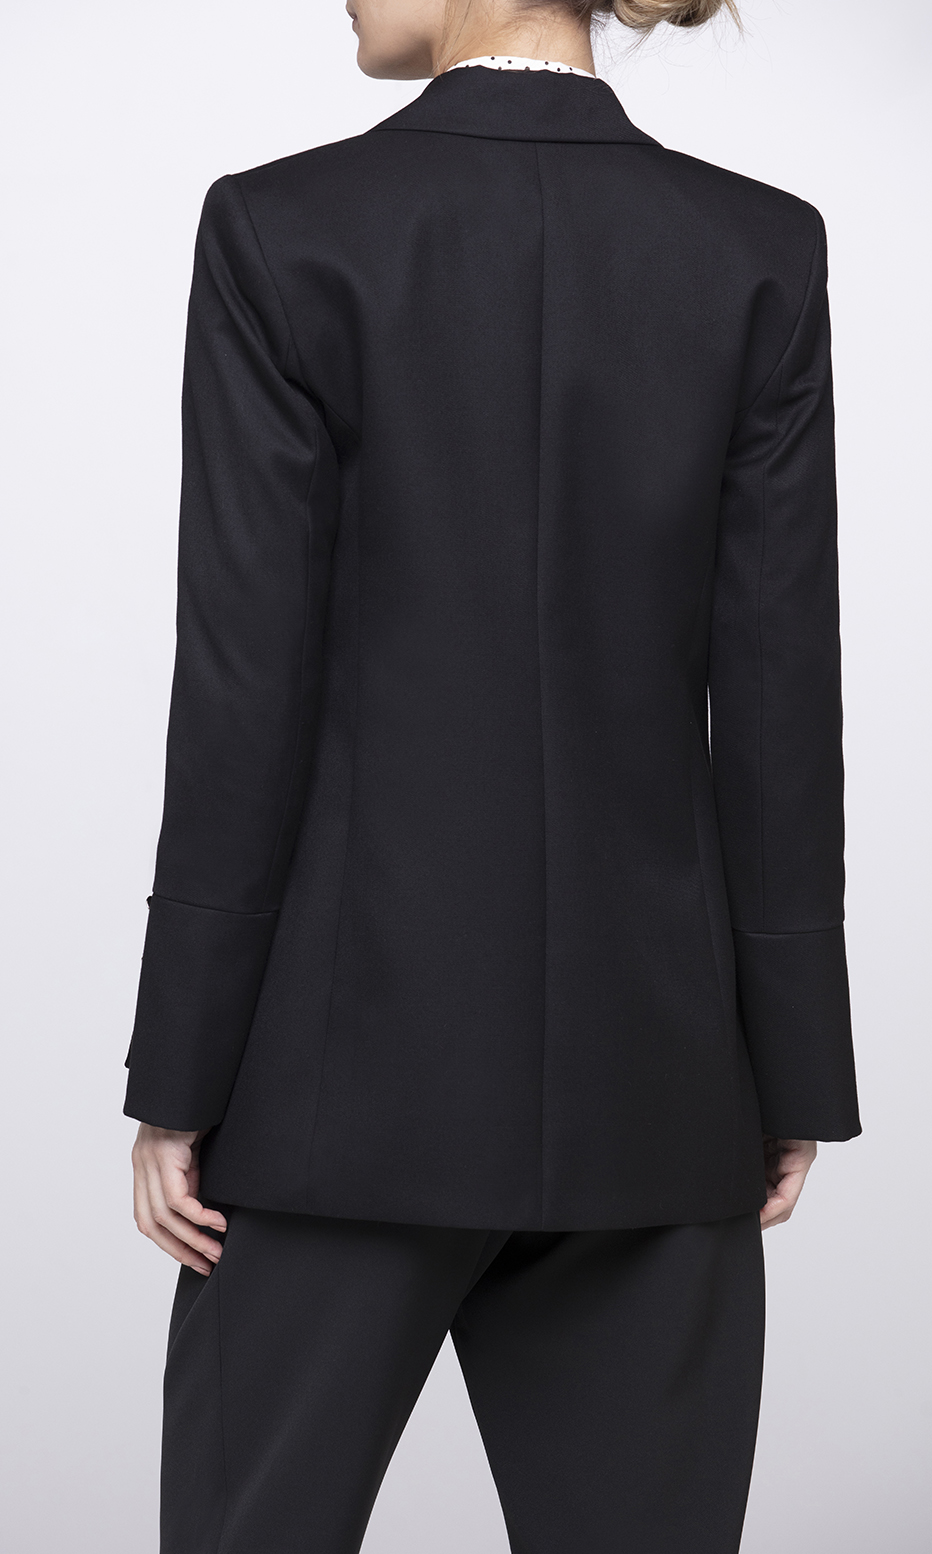 black structured blazer